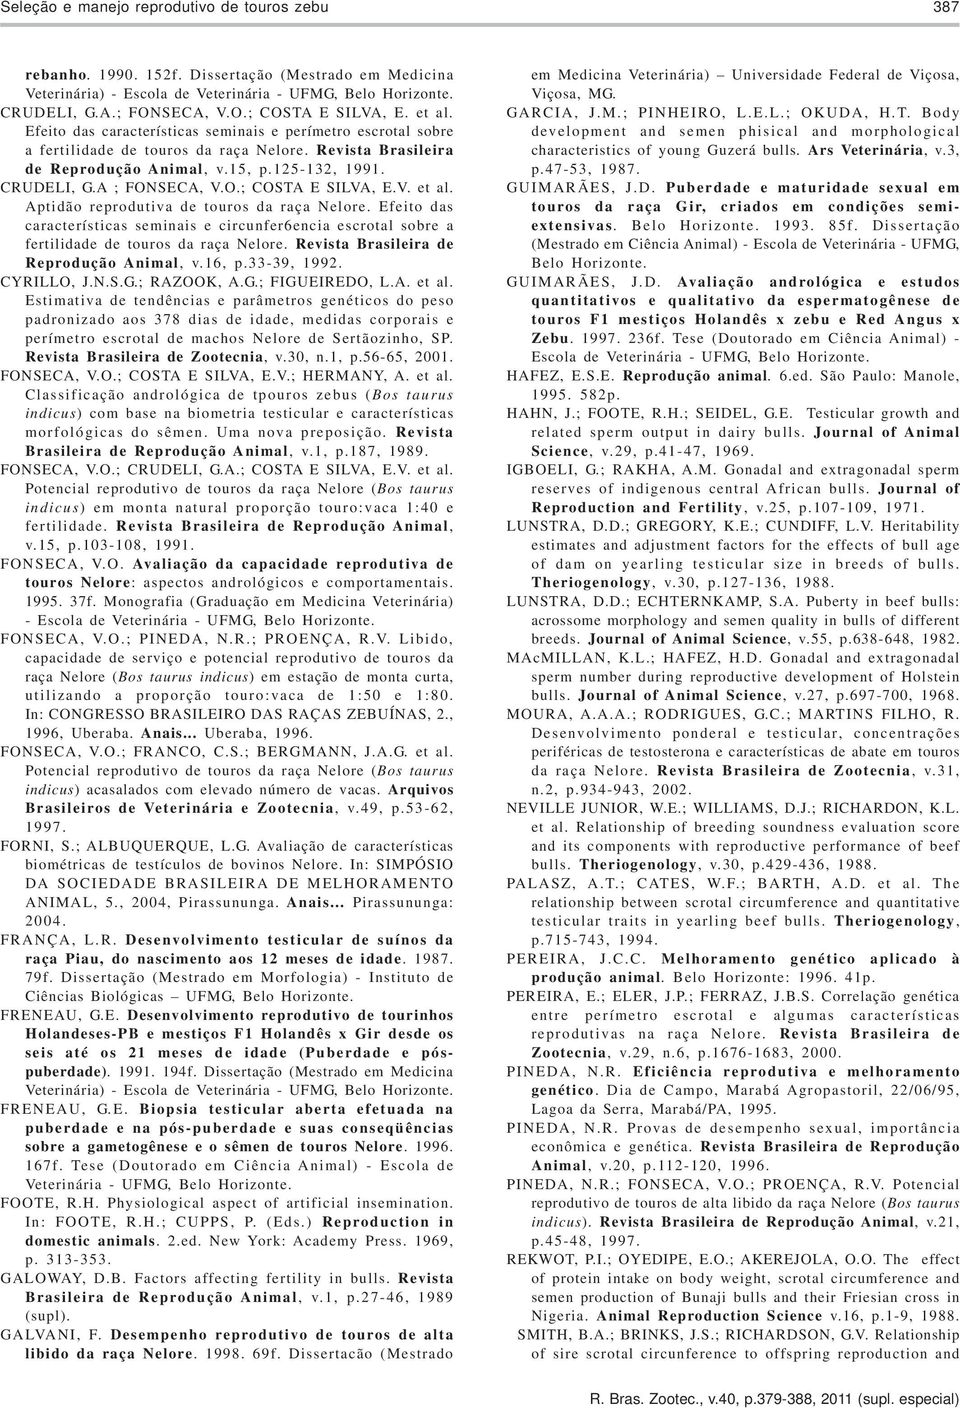 125-132, 1991. CRUDELI, G.A ; FONSECA, V.O.; COSTA E SILVA, E.V. et al. Aptidão reprodutiva de touros da raça Nelore.